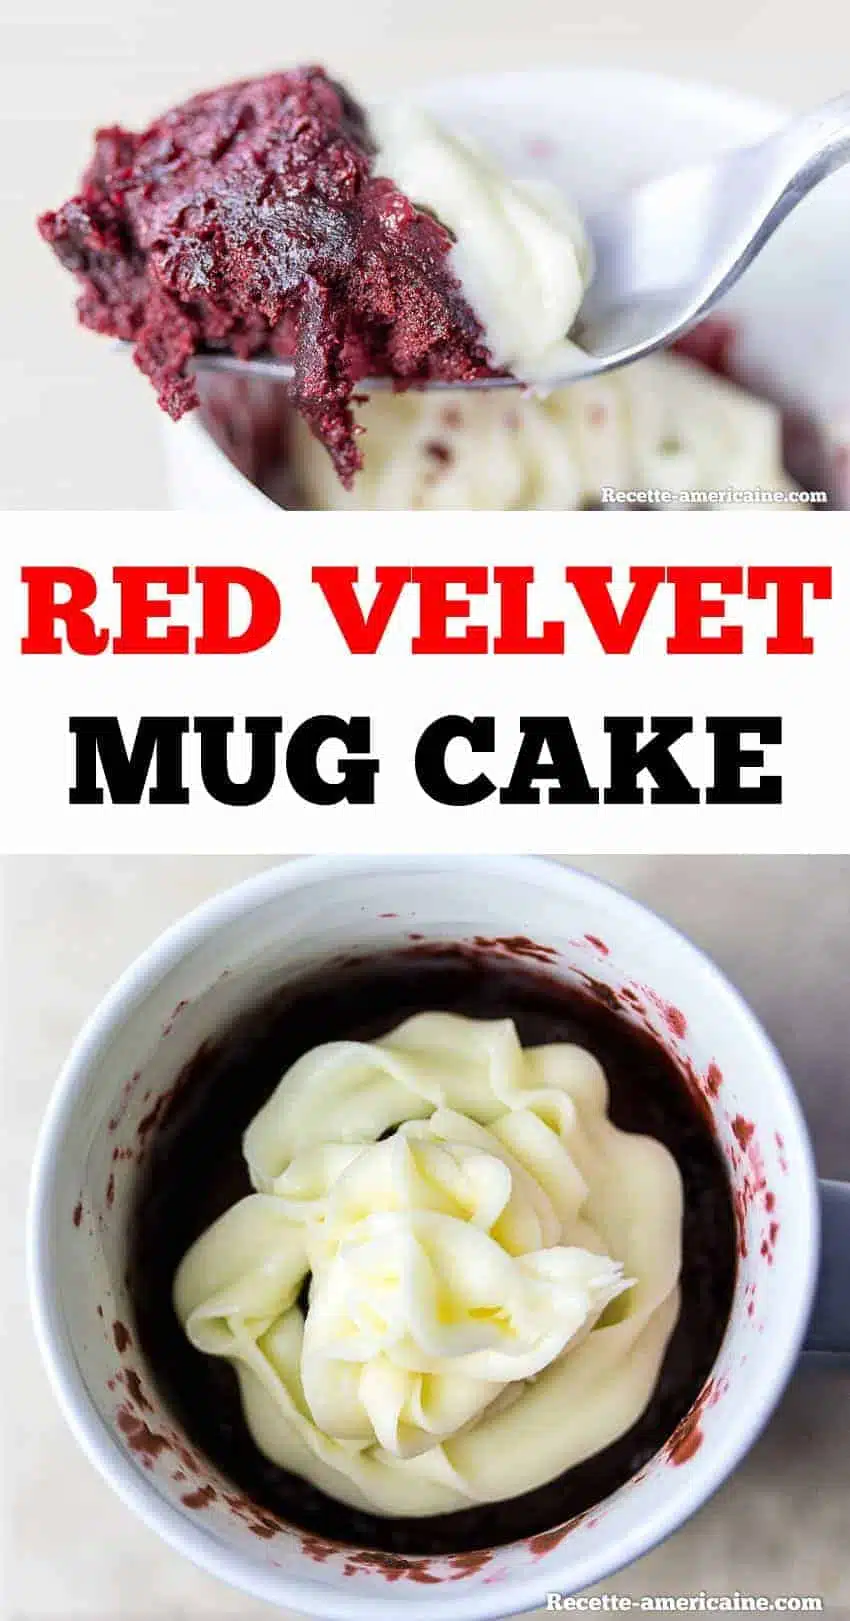 Recette red velvet mug cake